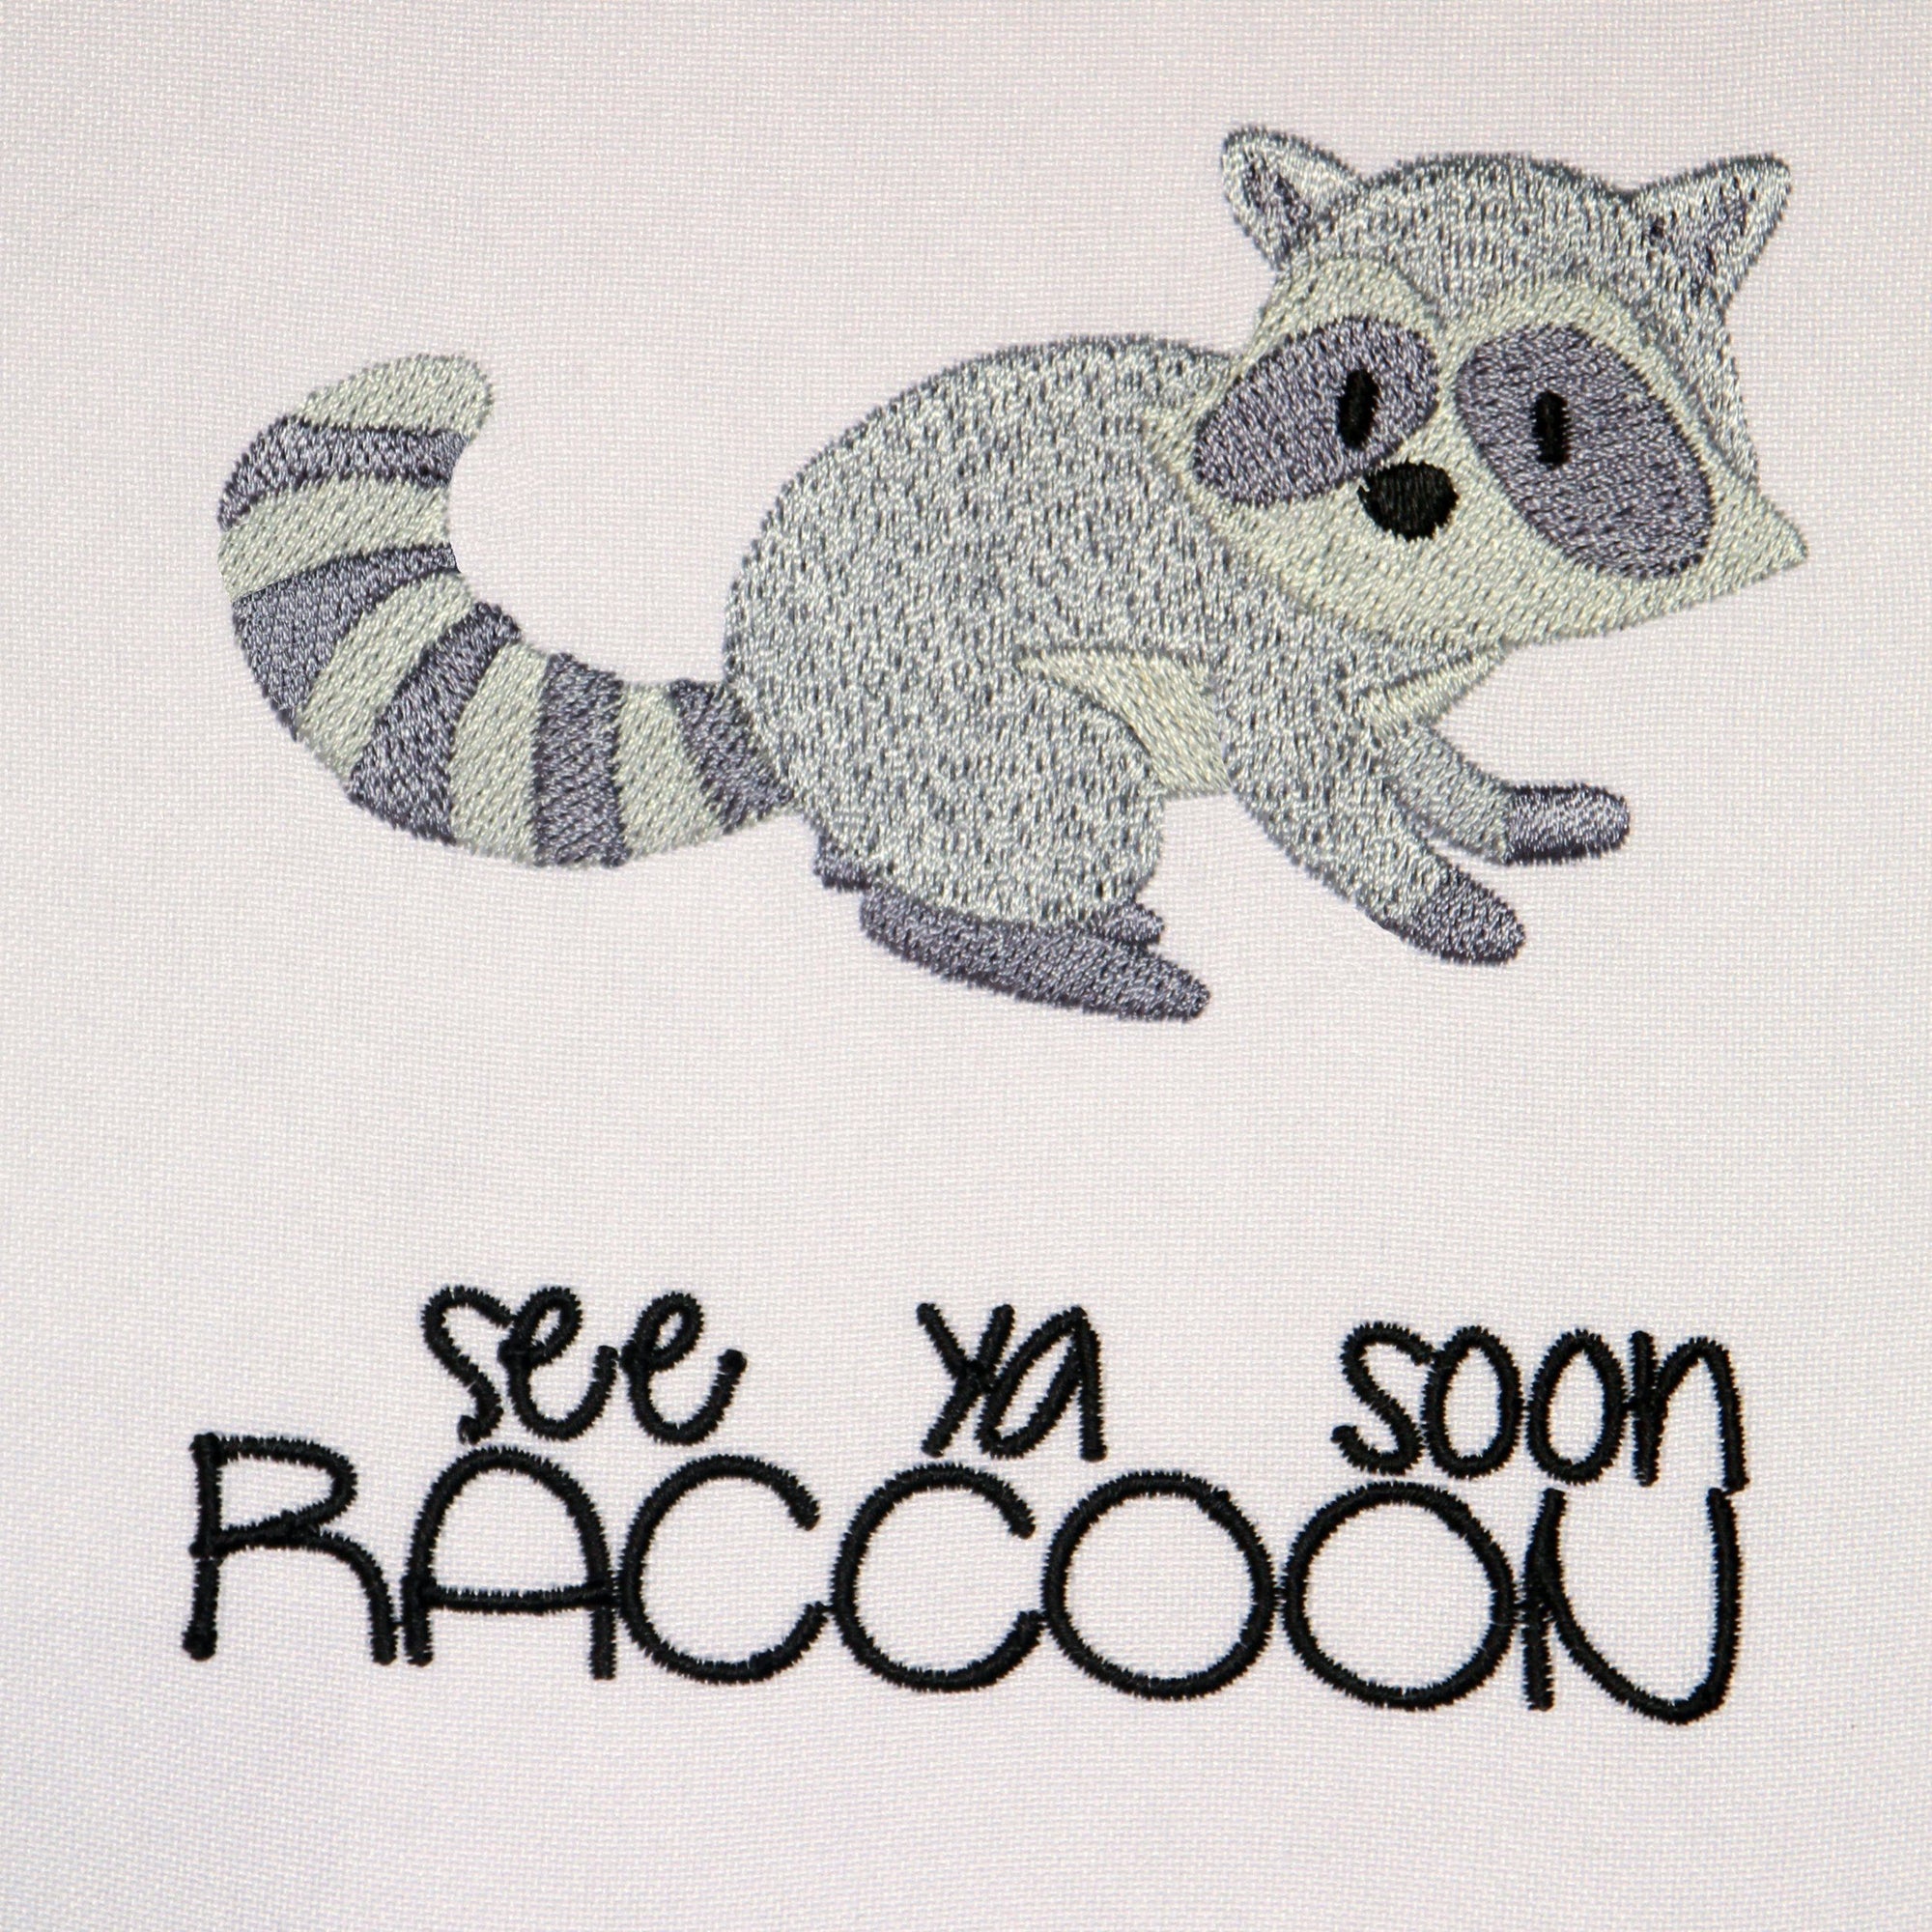 See ya soon Raccoon - aStitch aHalf